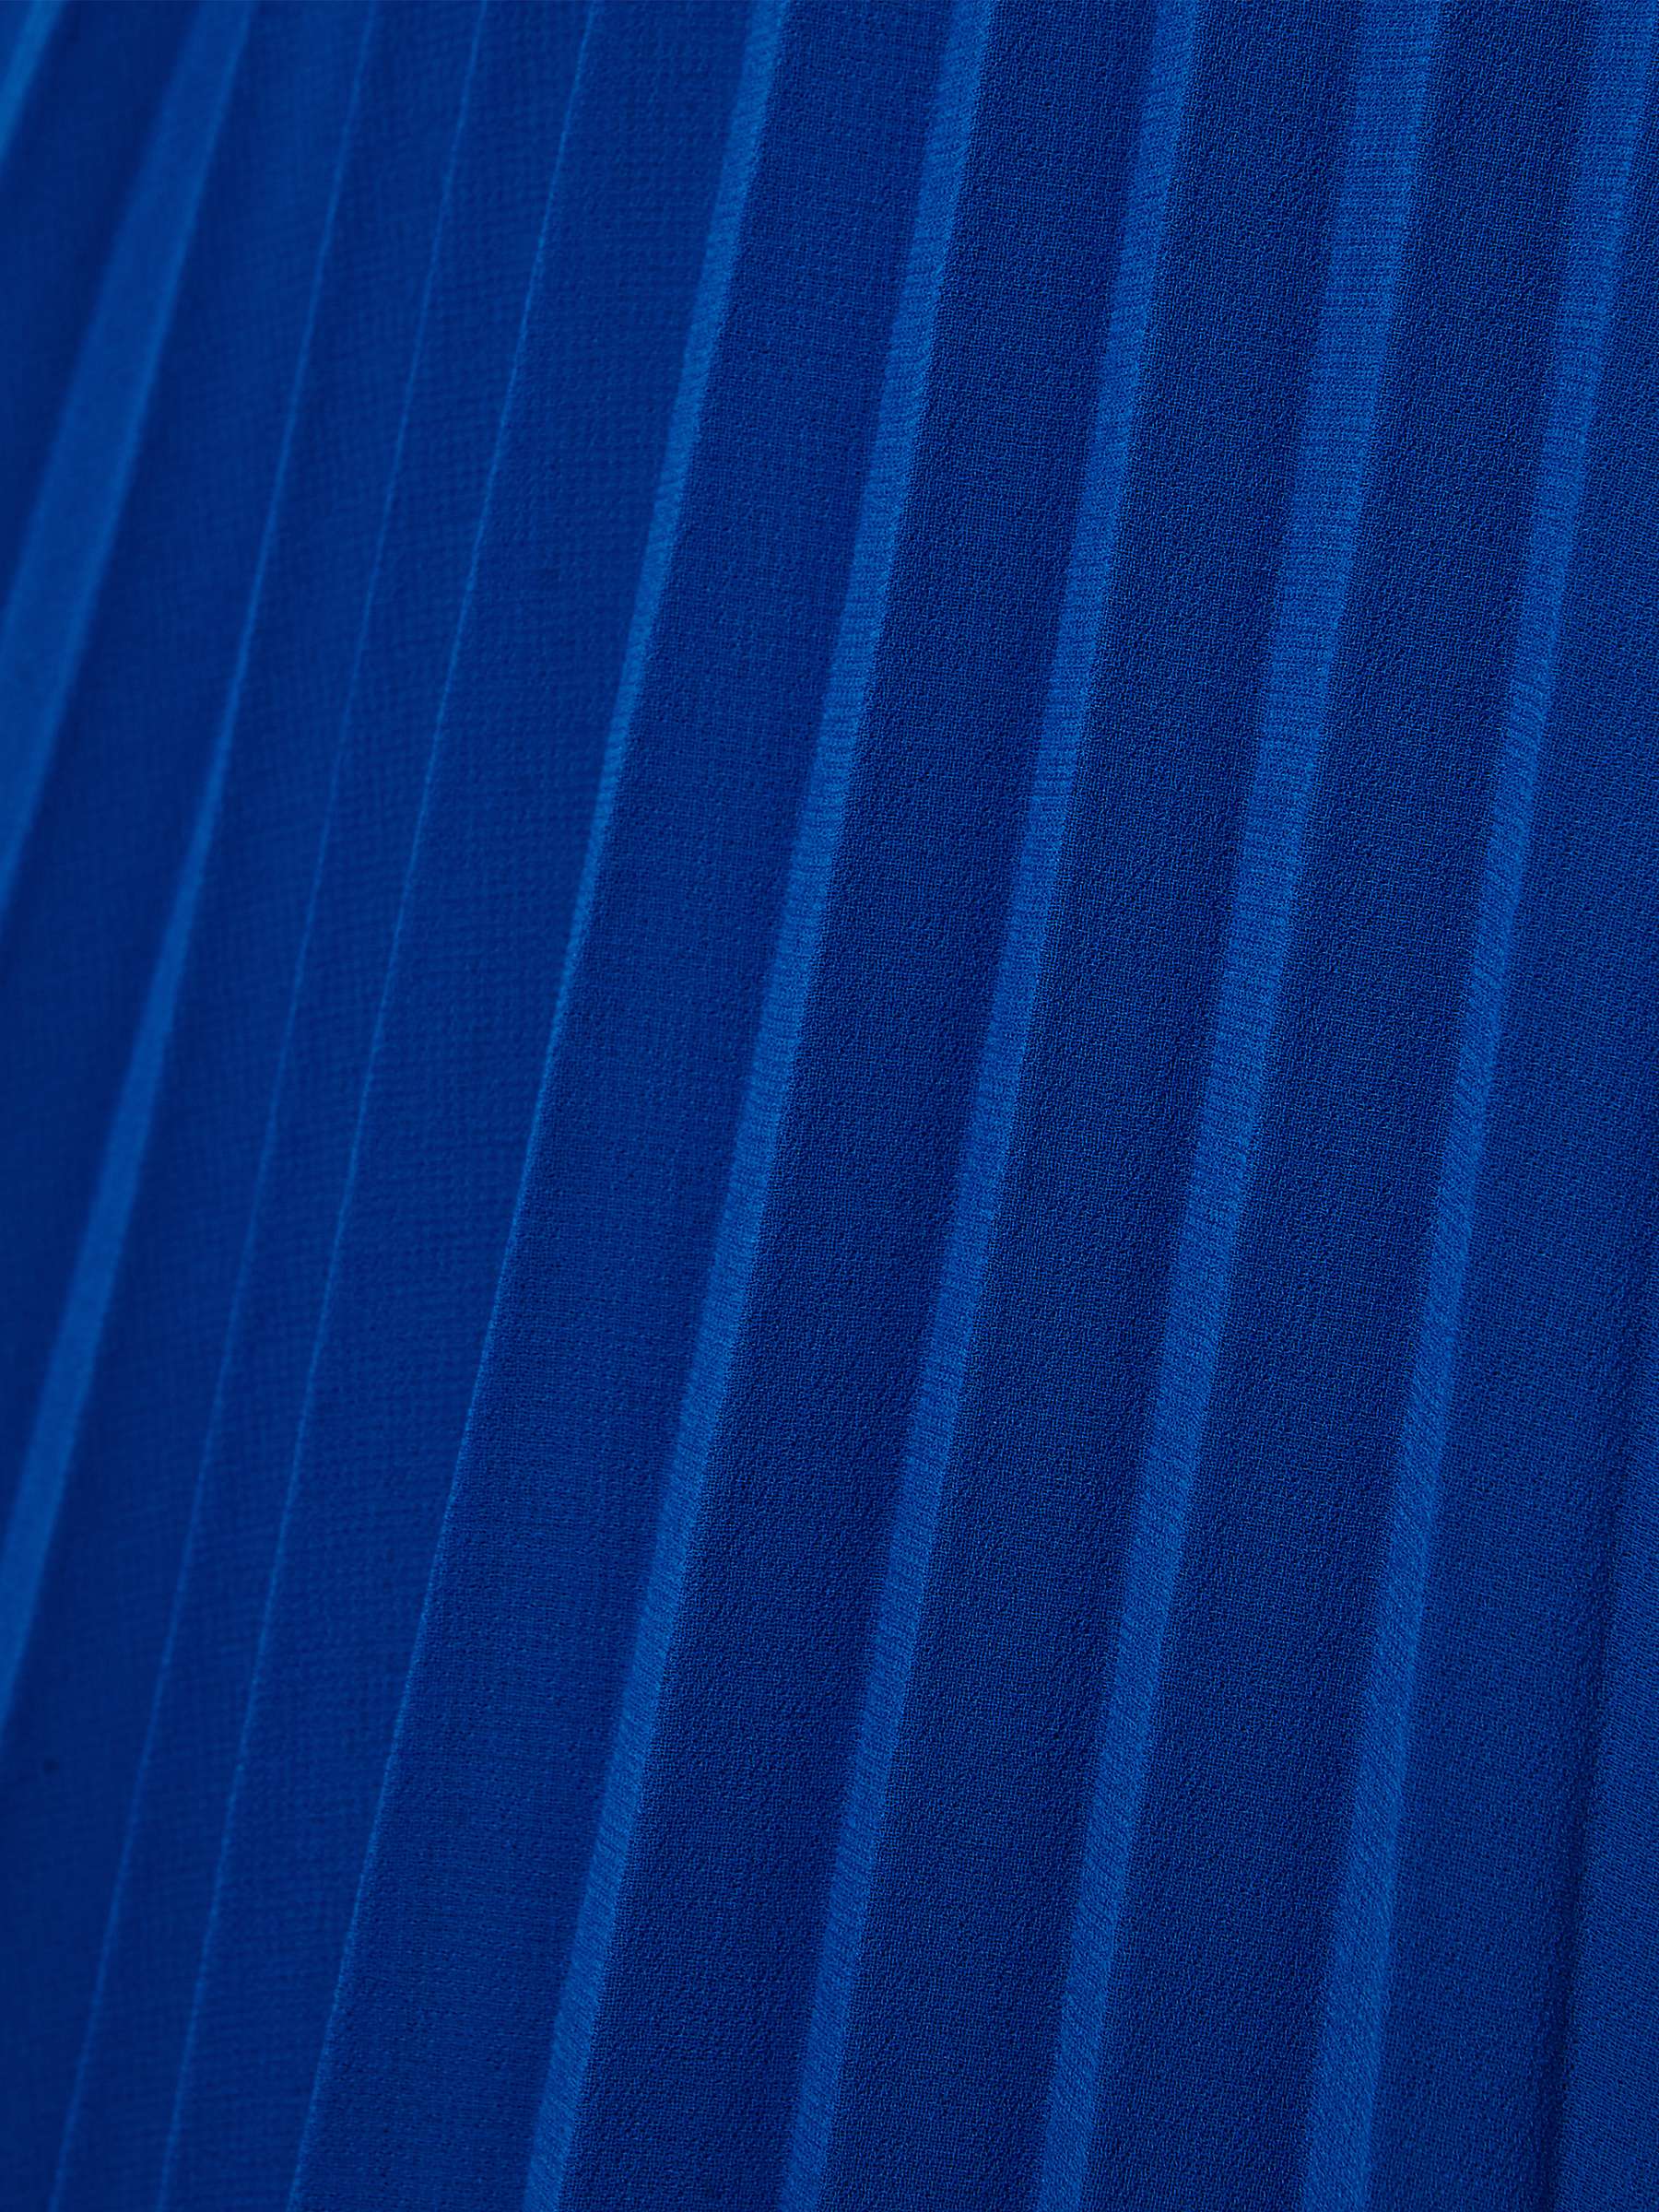 Hobbs Blythe Pleated Midi Dress, Lapis Blue at John Lewis & Partners